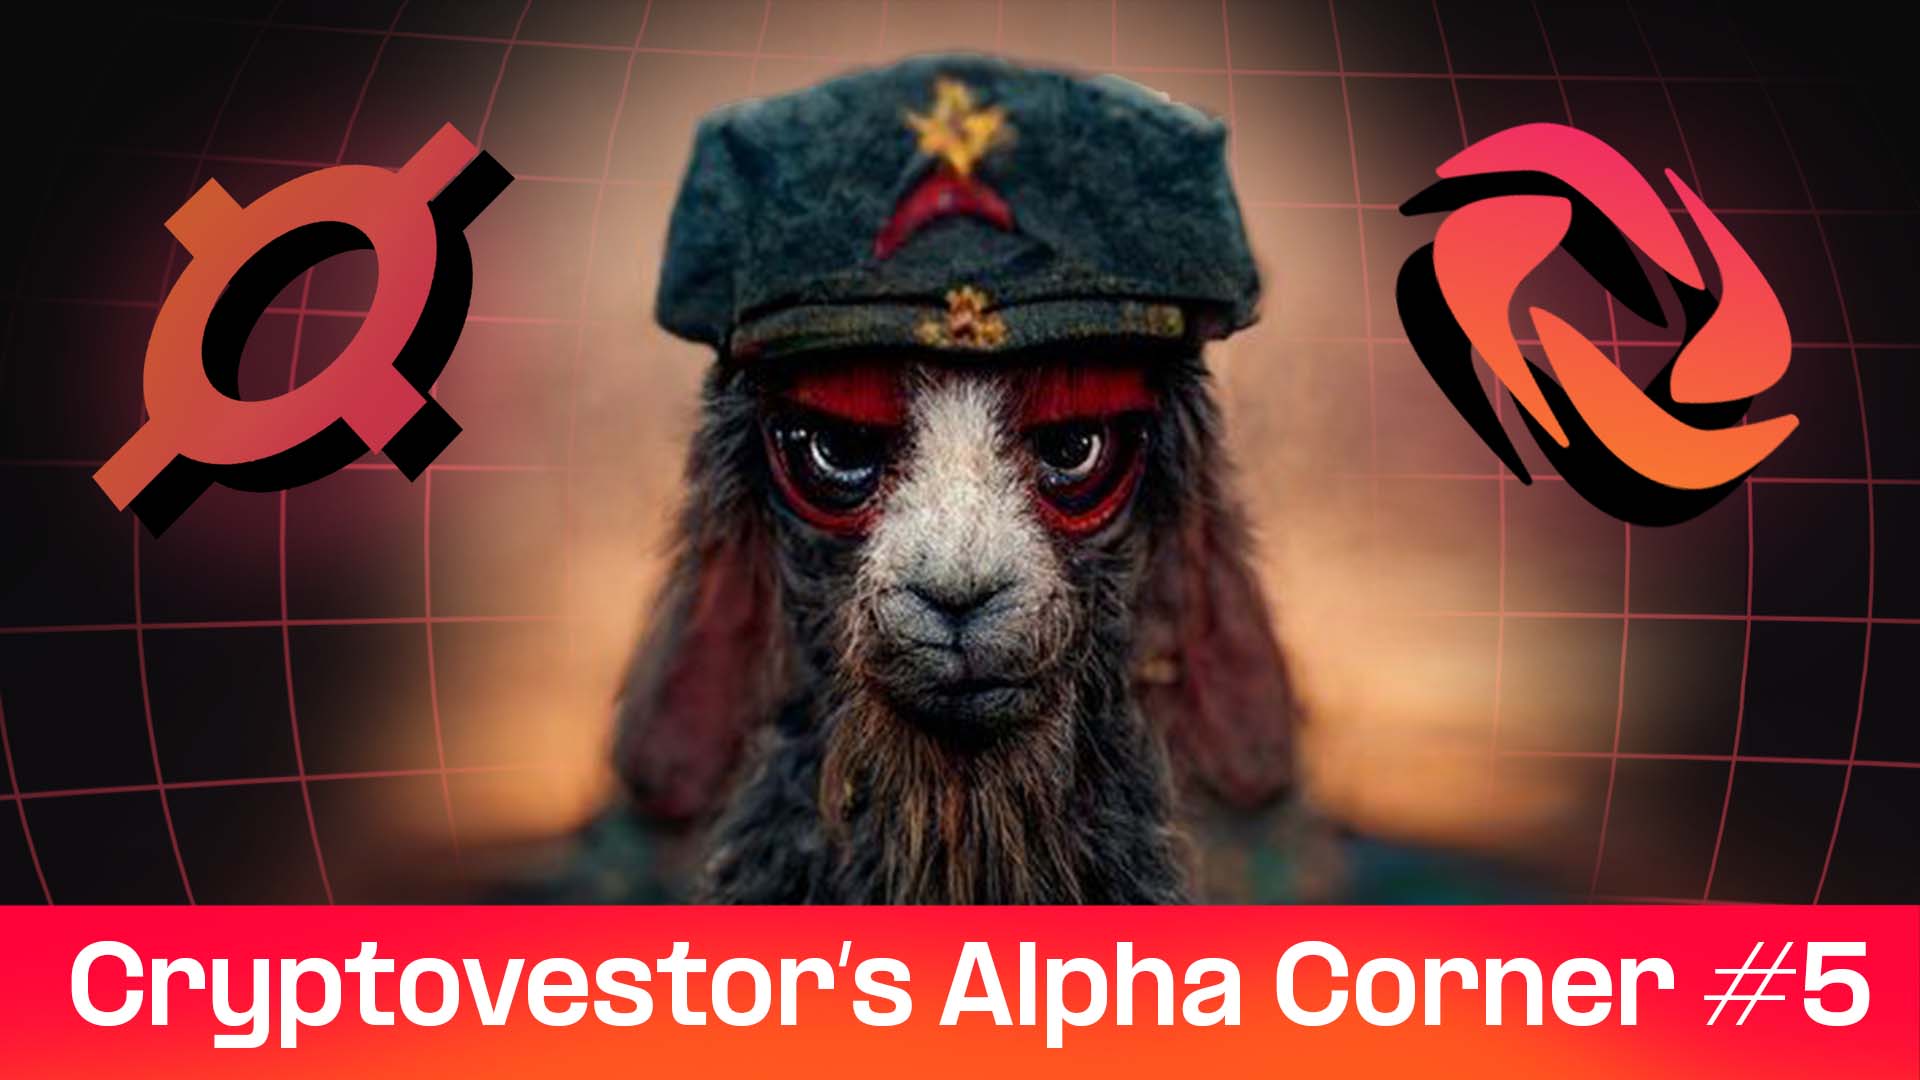 BAMM BAMM! Cryptovestor’s Alpha Corner #5 thumbnail